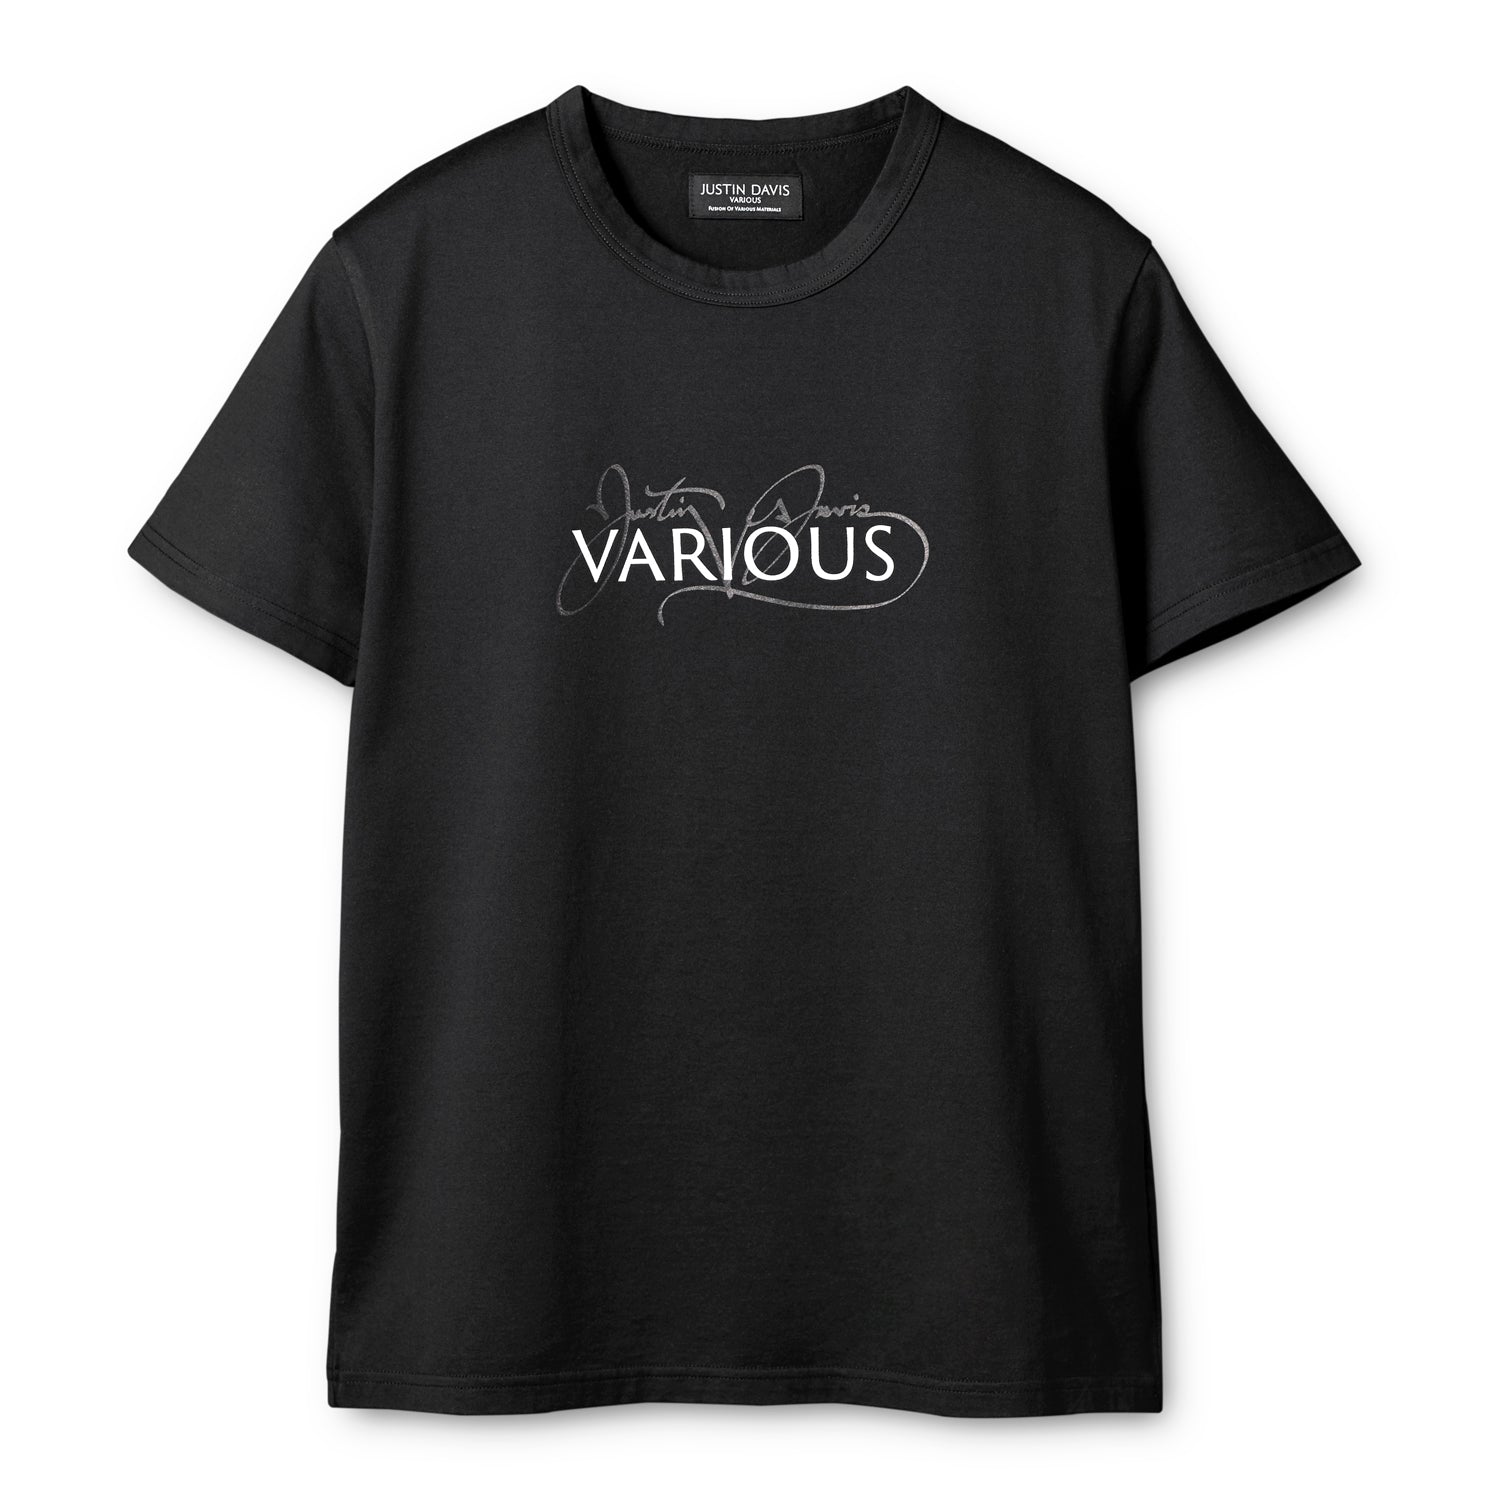 CURSIVO Tシャツ| JUSTIN DAVIS（ジャスティン デイビス）公式通販サイト